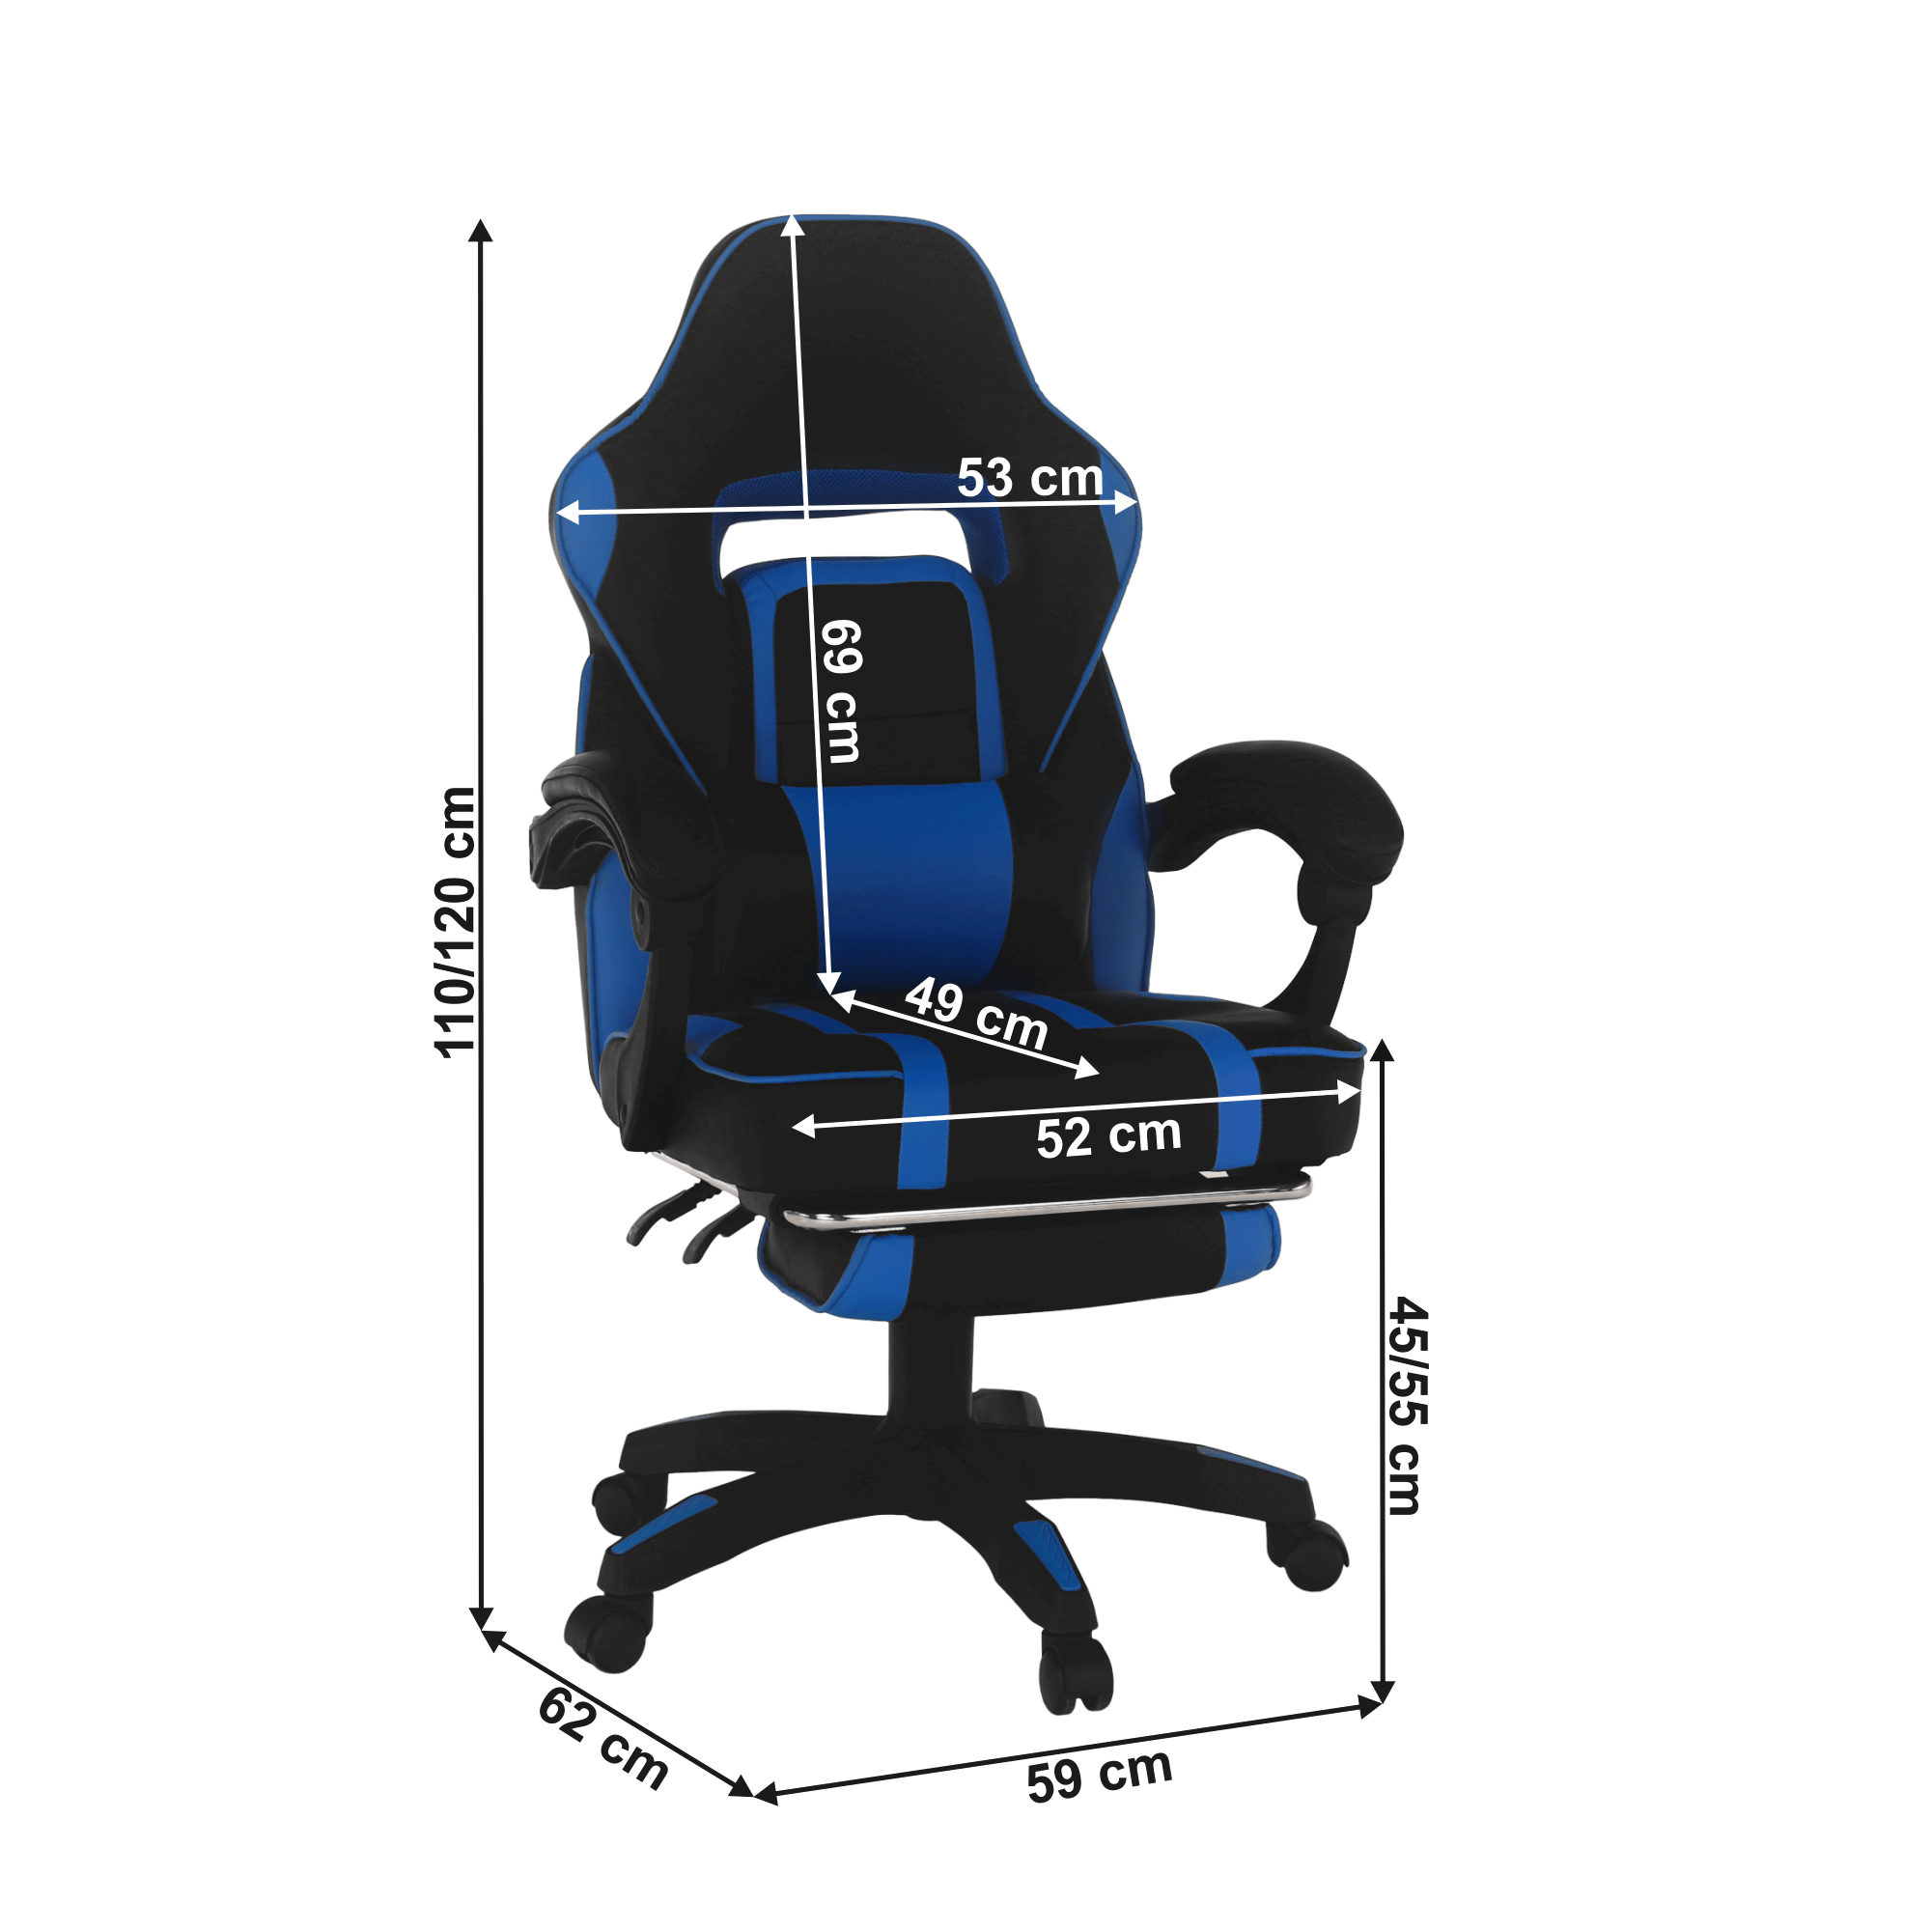 Irodai/gamer szék, kék/fekete, GUNNER